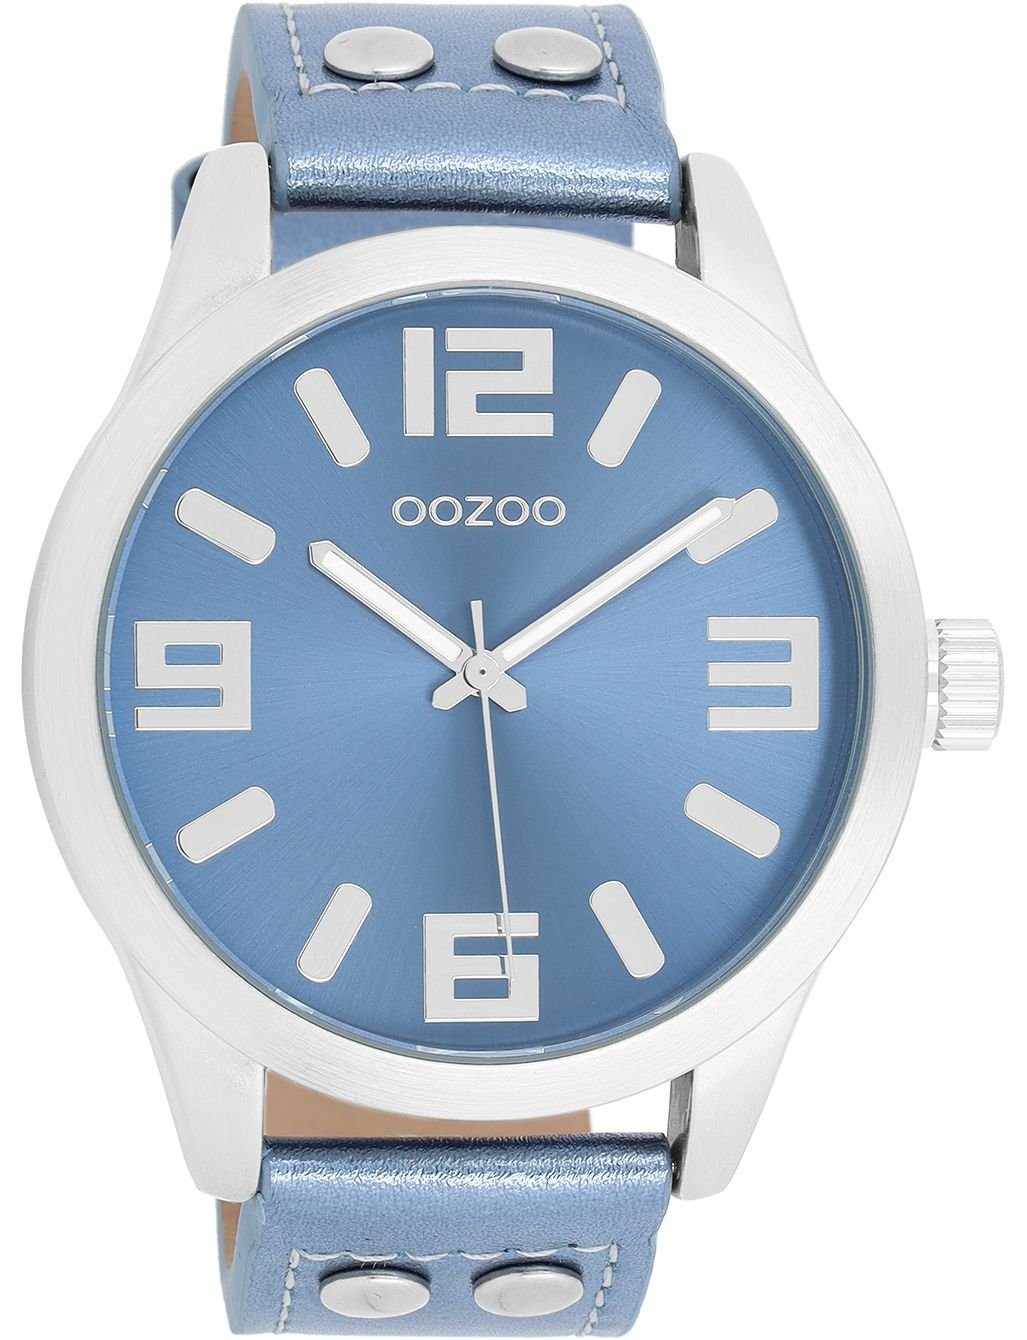 OOZOO Quarzuhr Oozoo Analog, Fashion-Style, hochwertigem Lederarmband, extra Miyota für Quarzwerk (ca. 46mm) groß und rund, Damen Uhr Armbanduhr Modische Damenuhr Herren Damen Timepieces mit